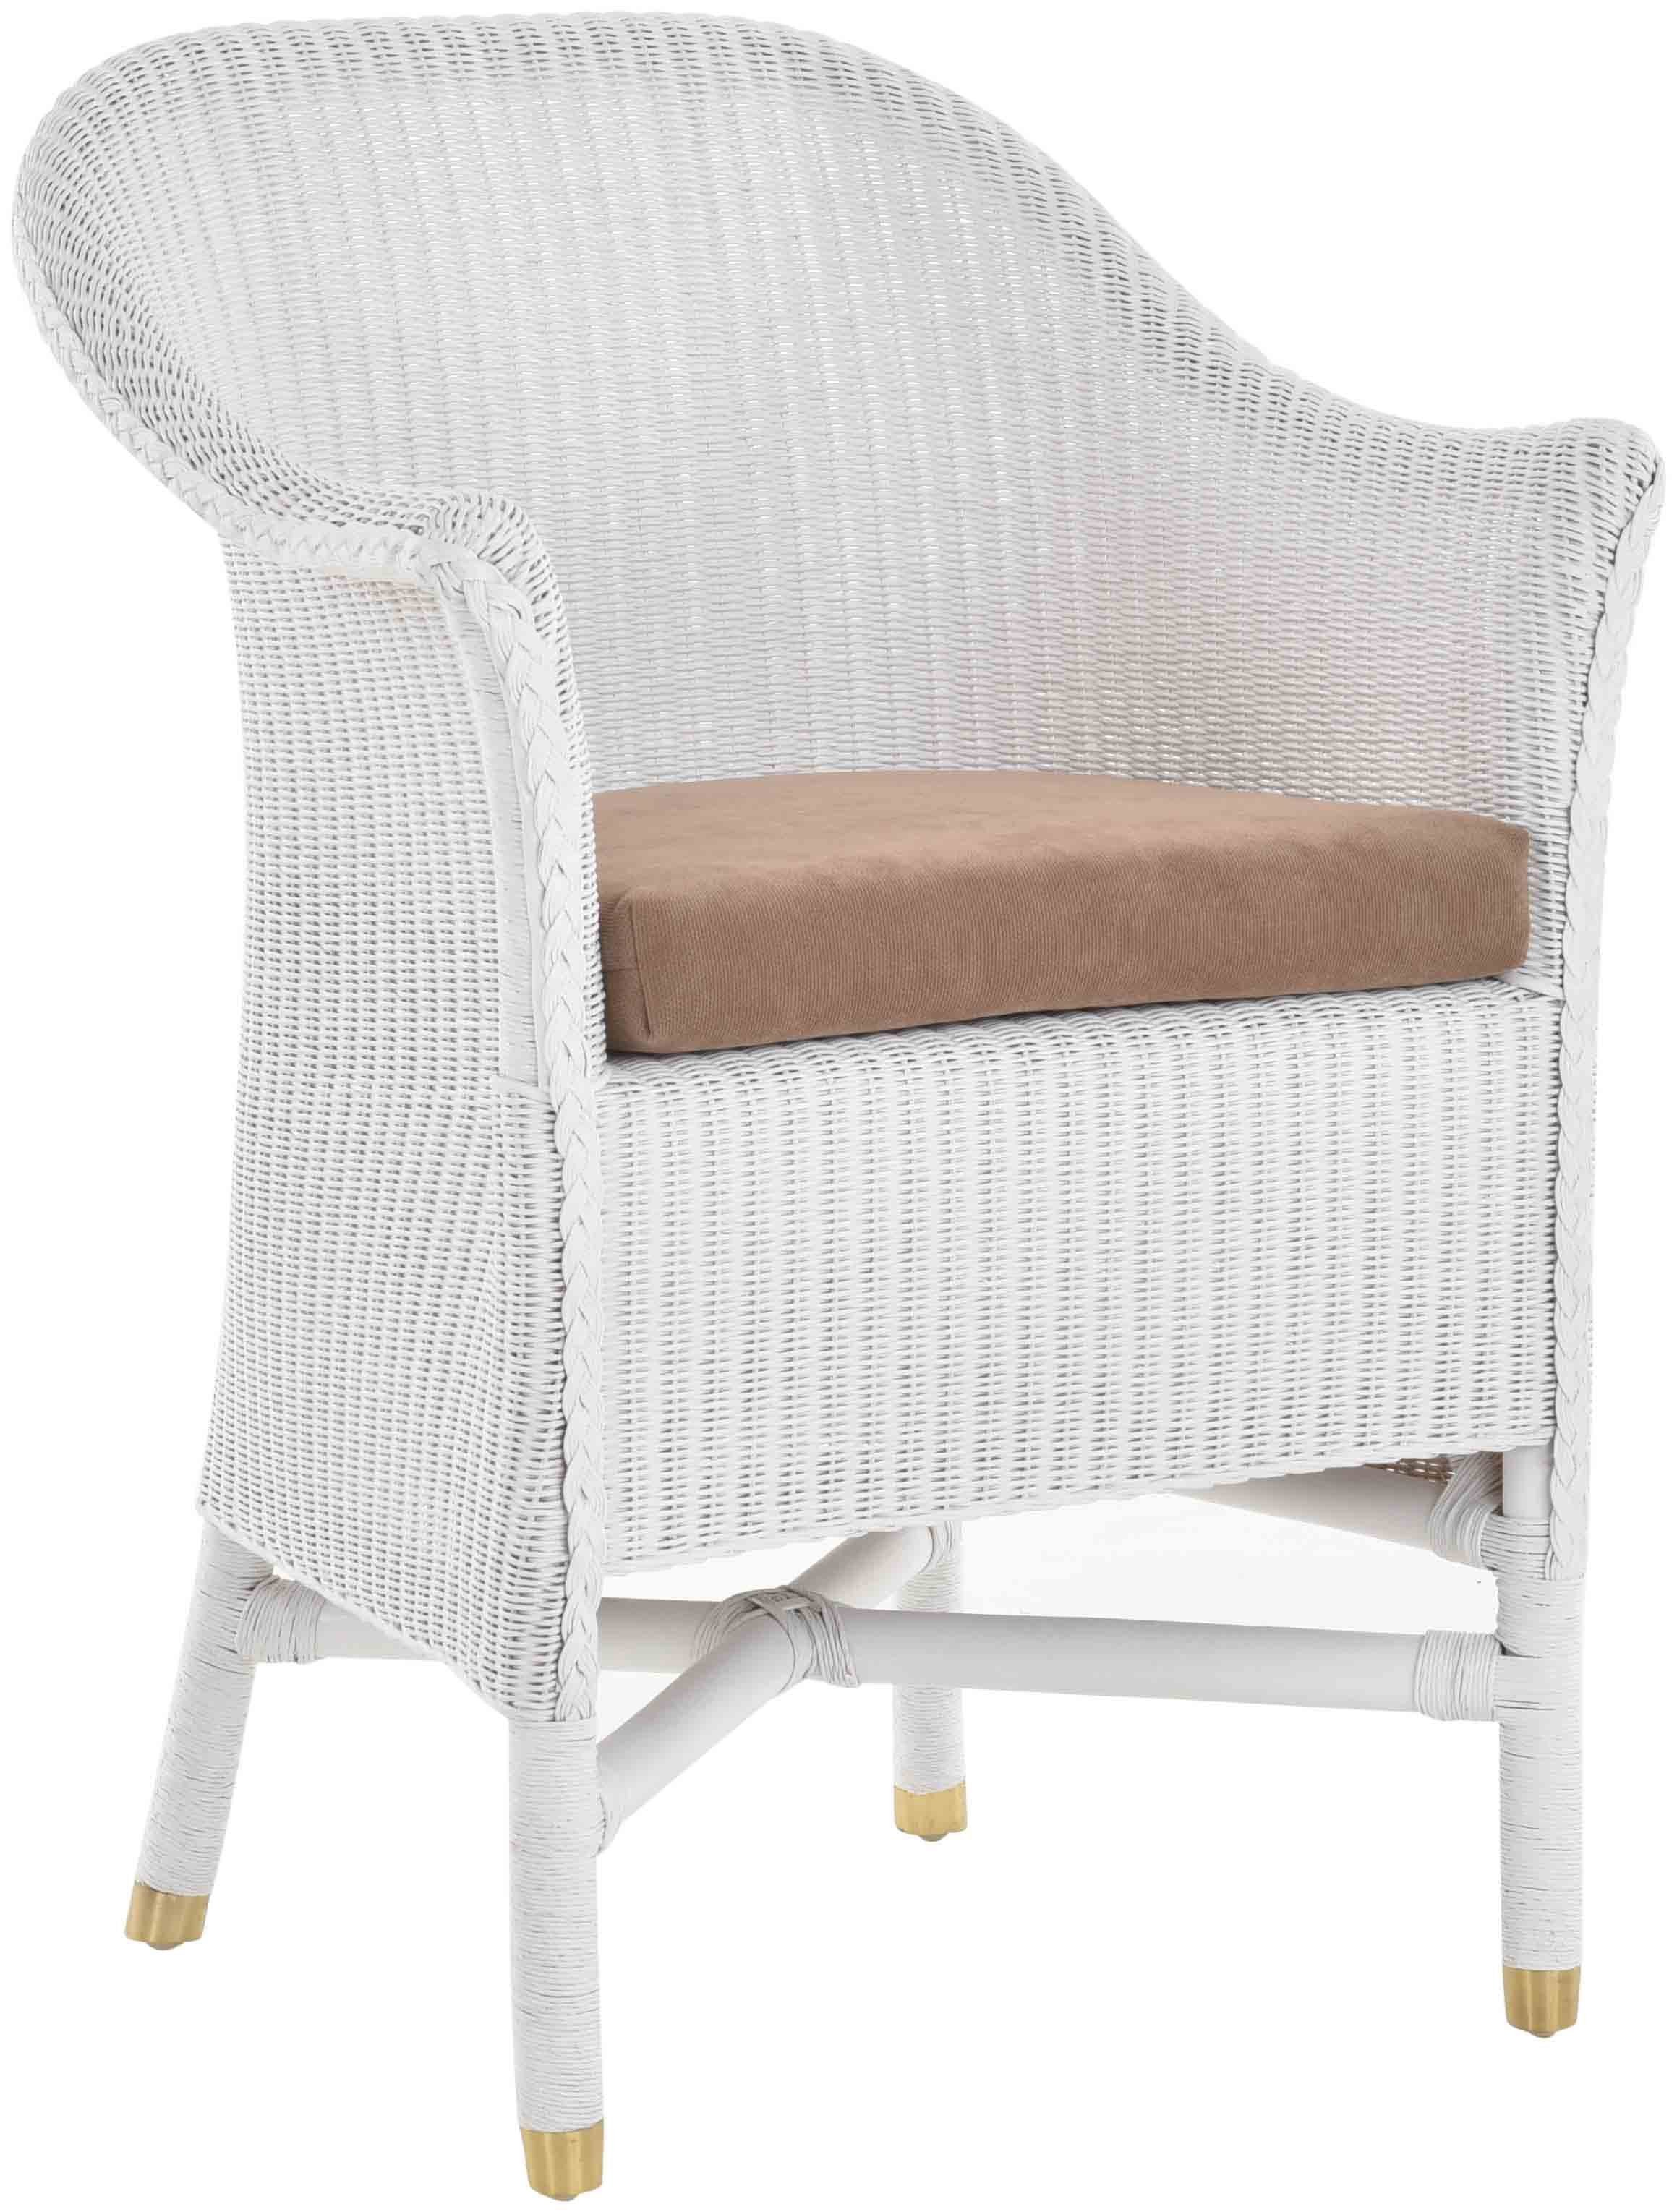 Krines Home Esszimmersessel Loom-Sessel inkl. Polster Braun aus echtem Loom-Geflecht, Komplett montiert